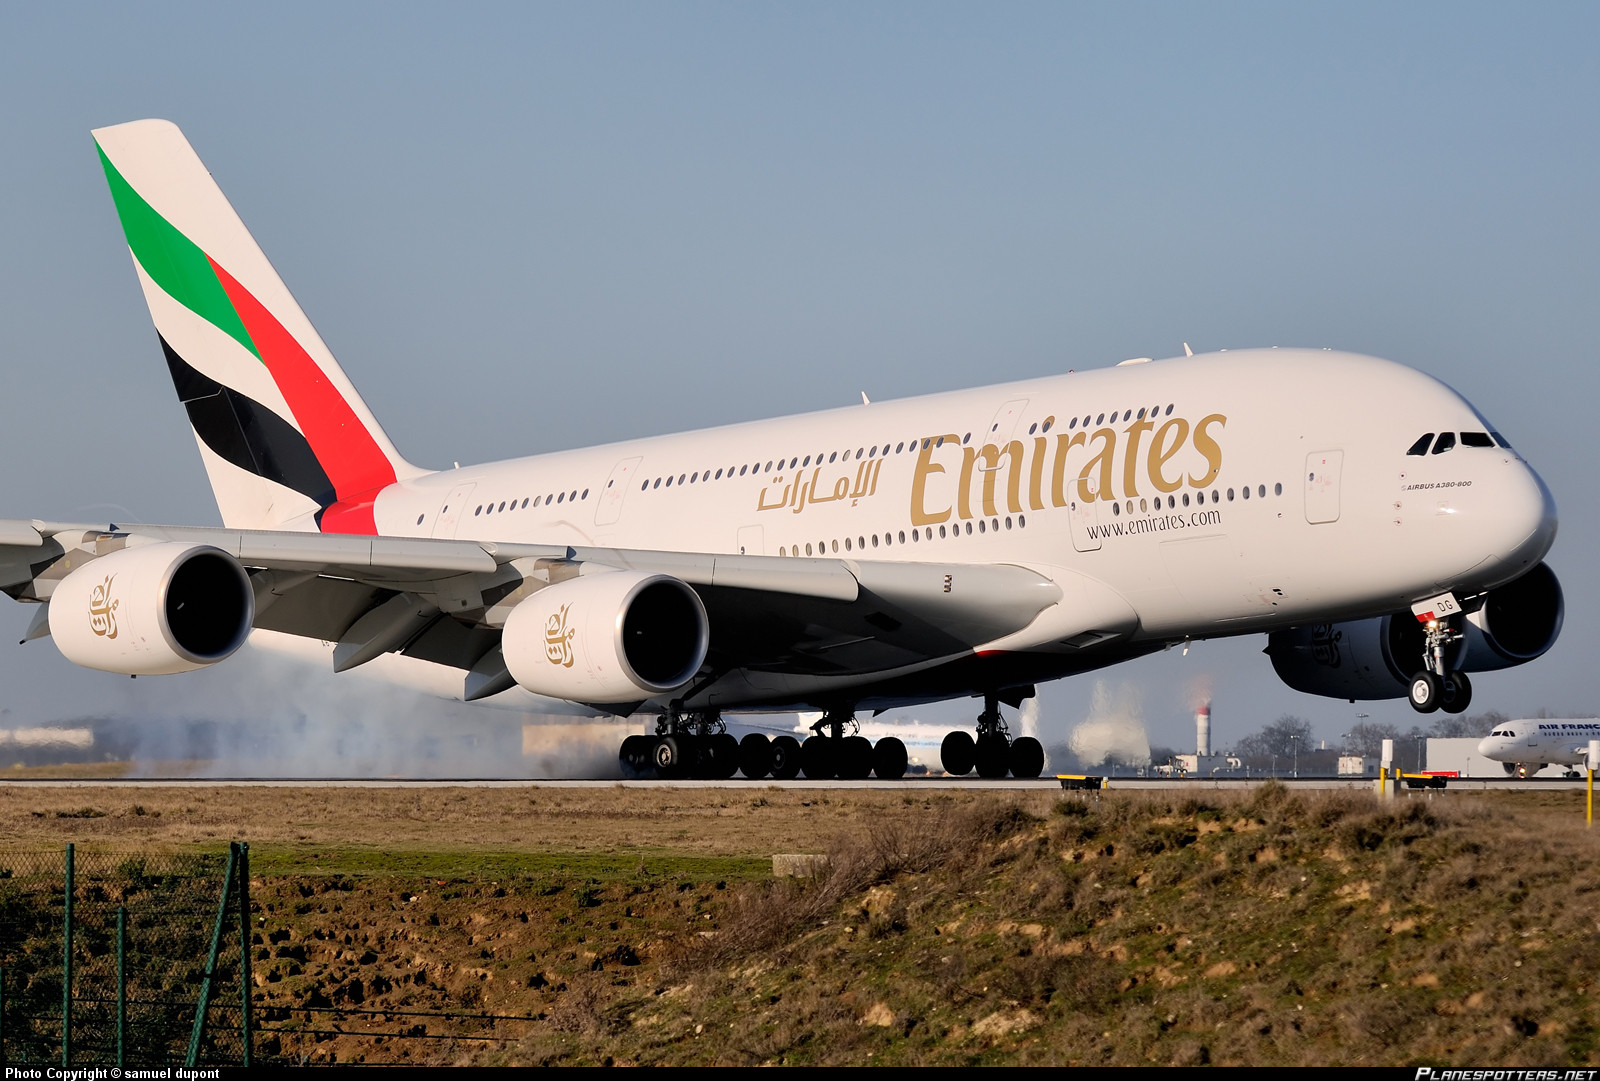 Αναγκαστική προσγείωση έκανε αεροπλάνο της Emirates στη Λάρνακα